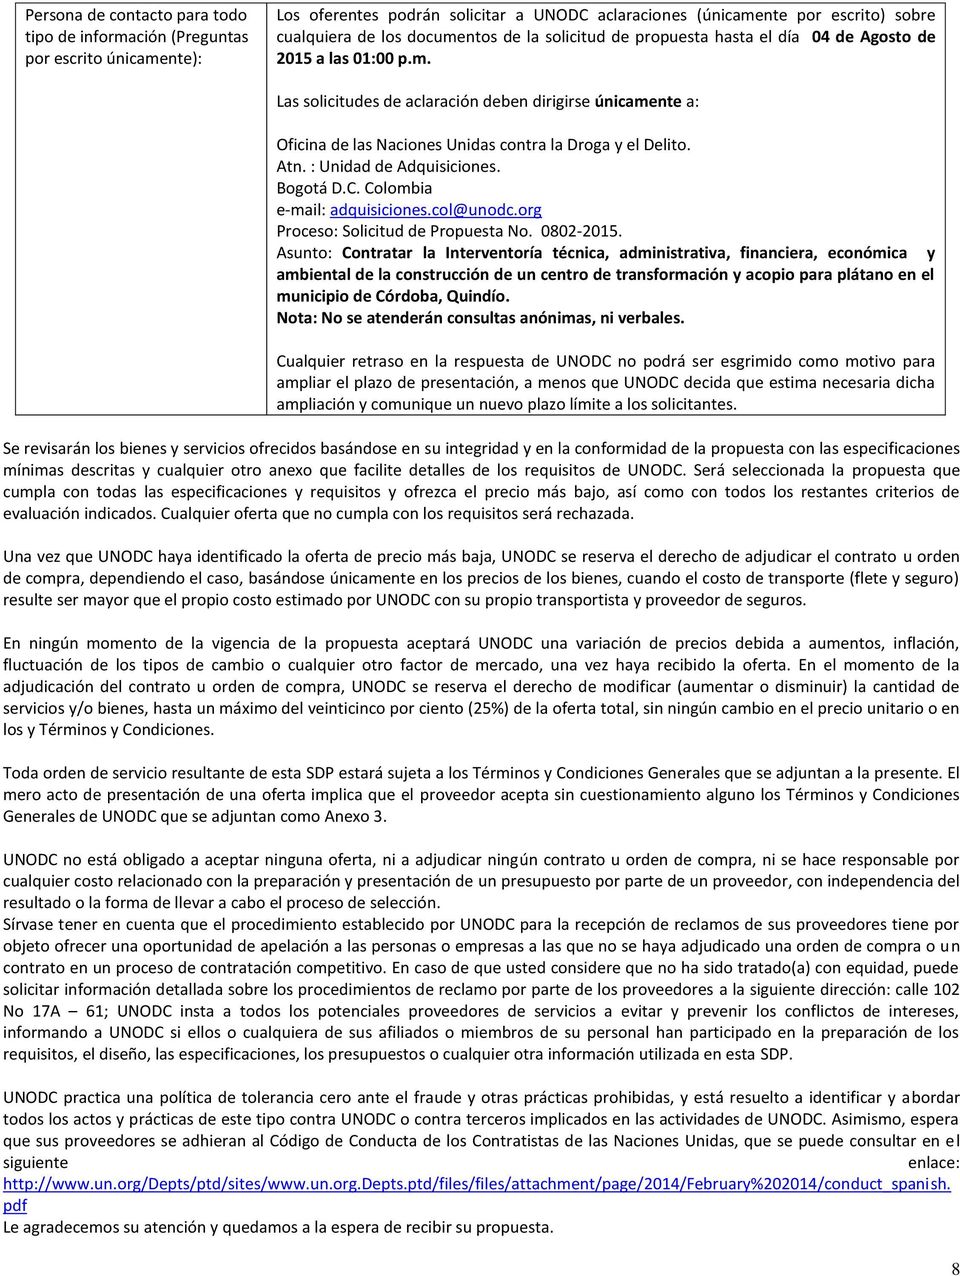 Atn. : Unidad de Adquisiciones. Bogotá D.C. Colombia e-mail: adquisiciones.col@unodc.org Proceso: Solicitud de Propuesta No. 0802-2015.